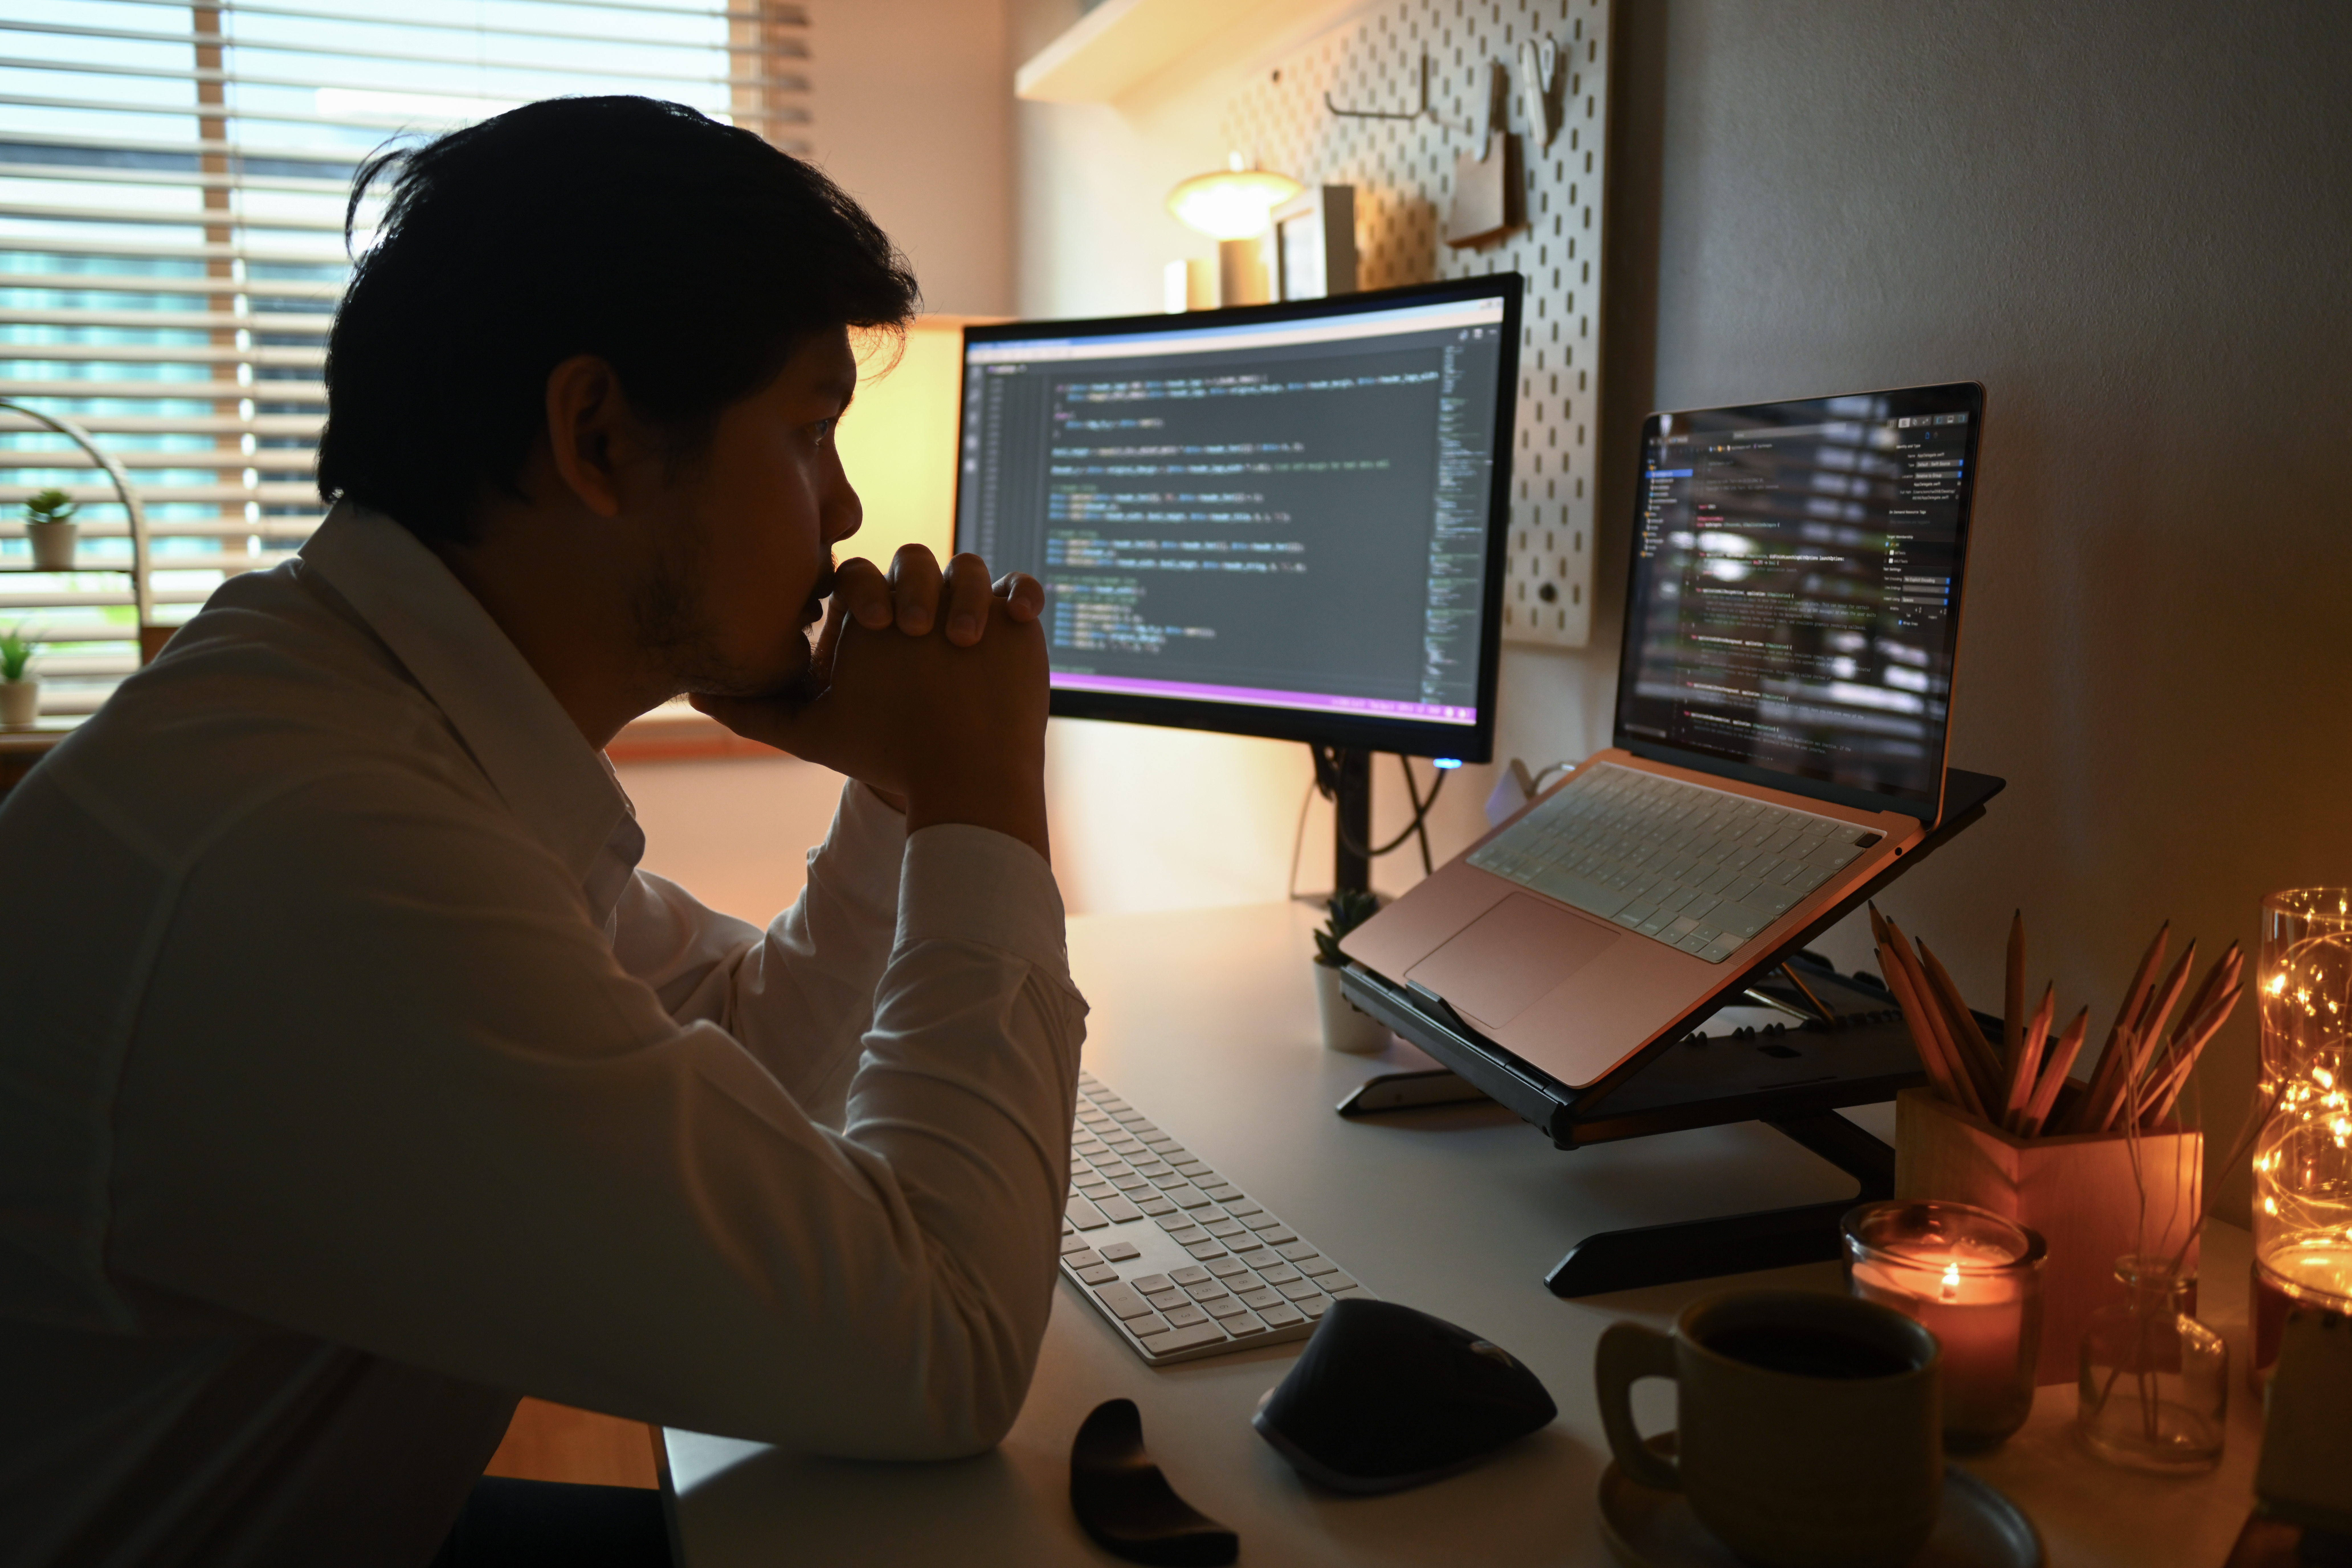 Side view of focused software developer programming on desktop computer.